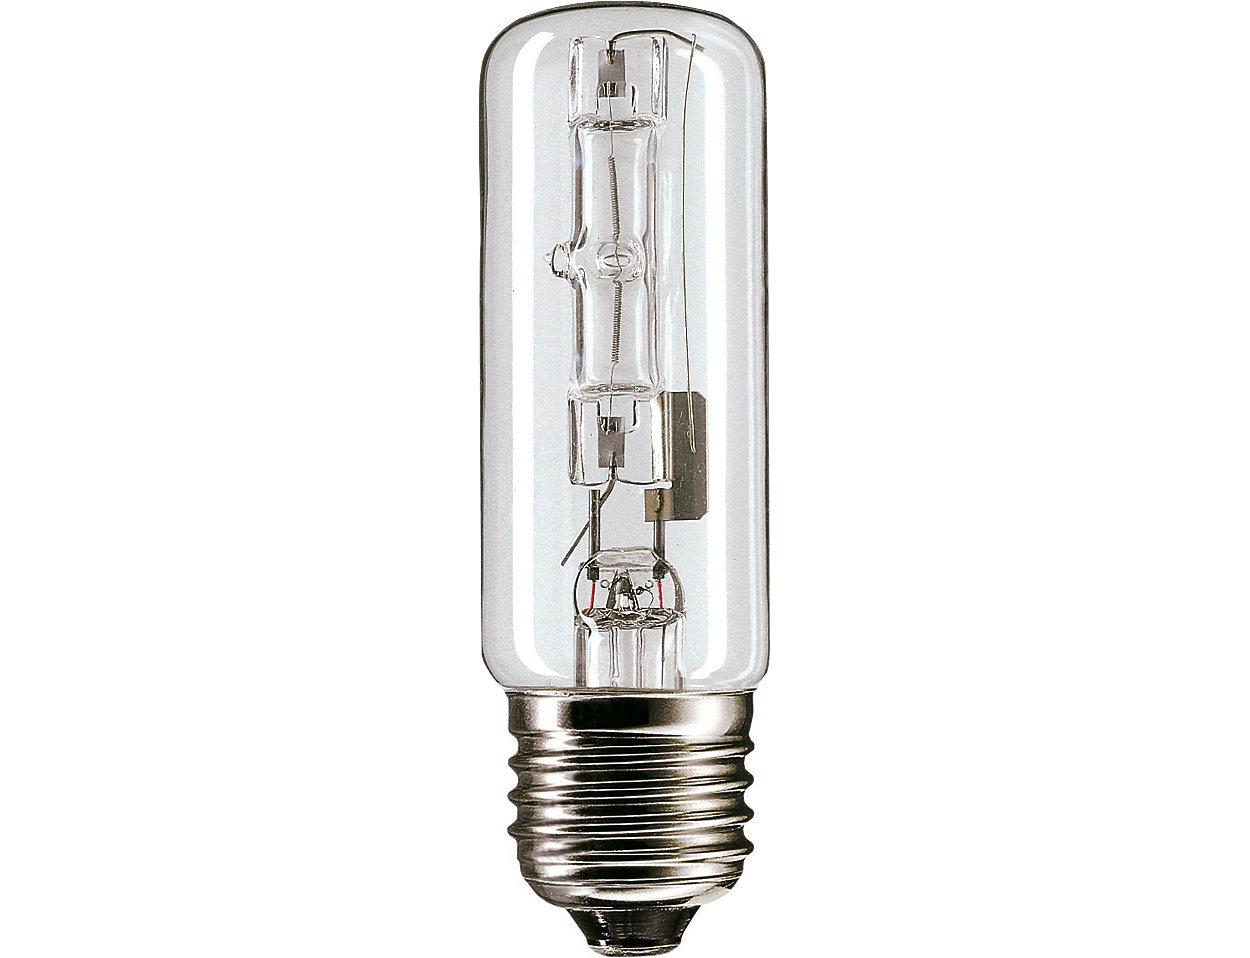 The new classic light bulb